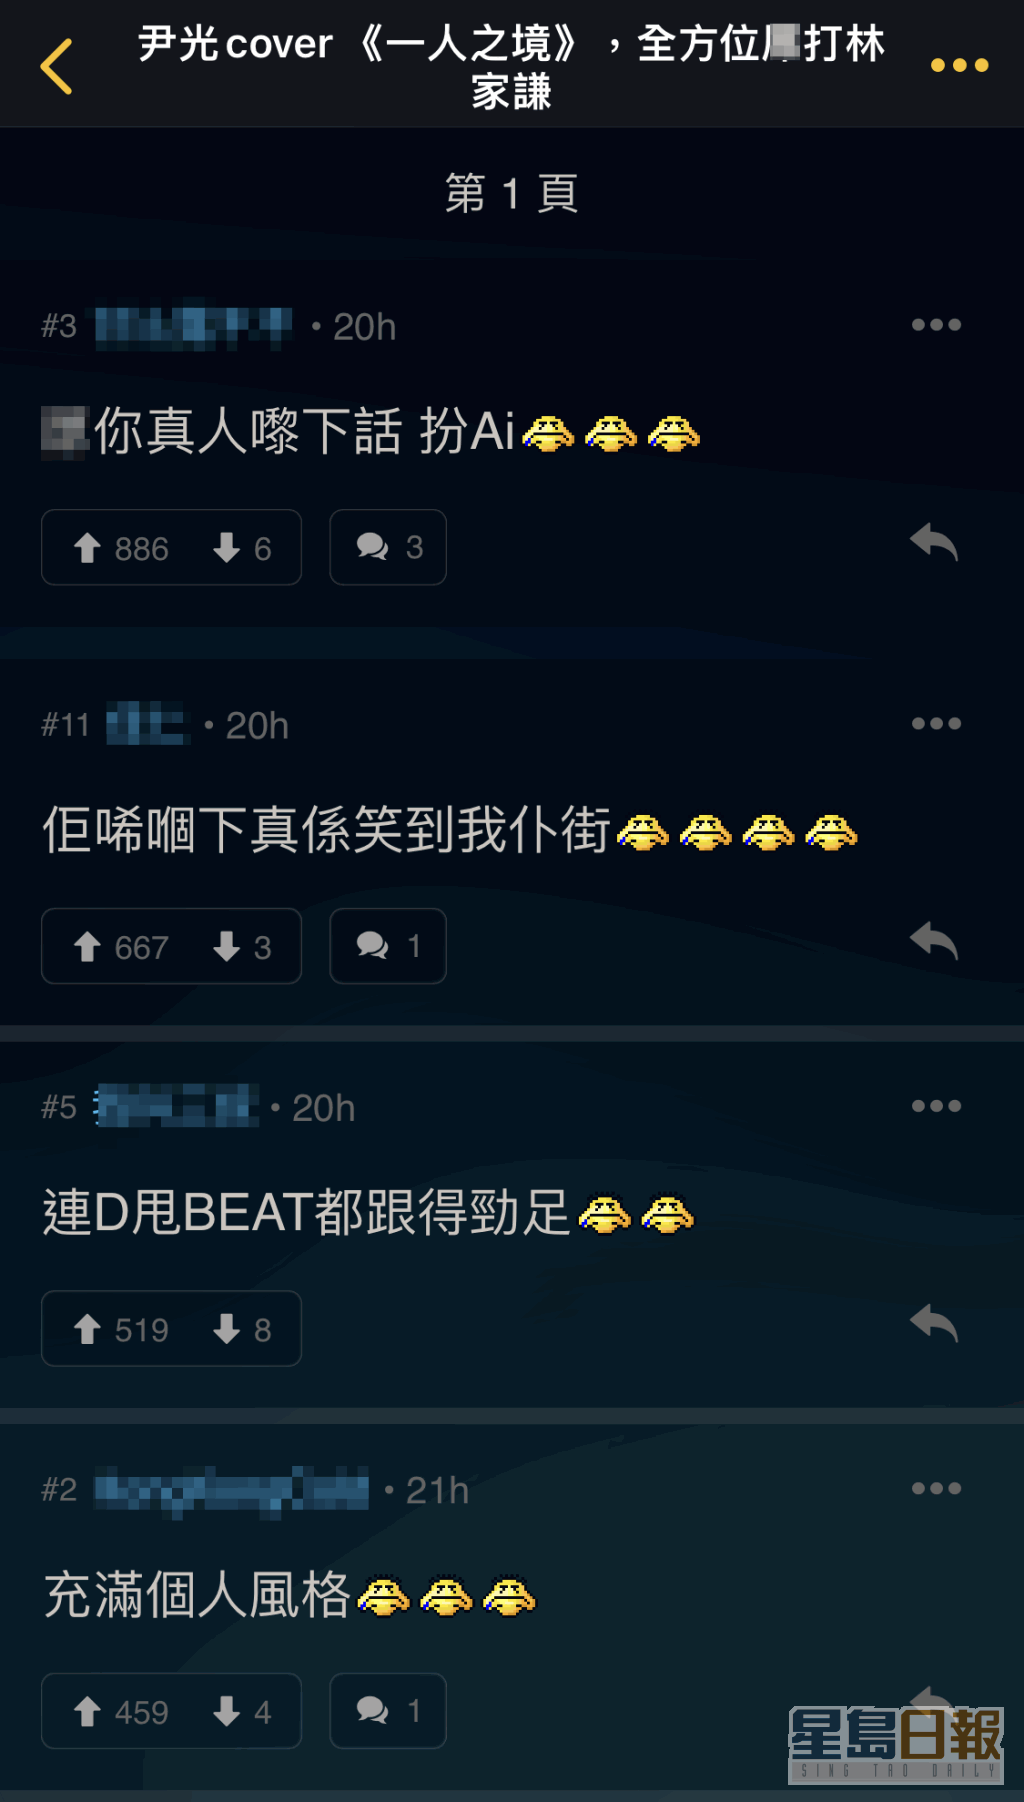 網民笑說AI尹光唱《一人之境》連甩beat都跟足。